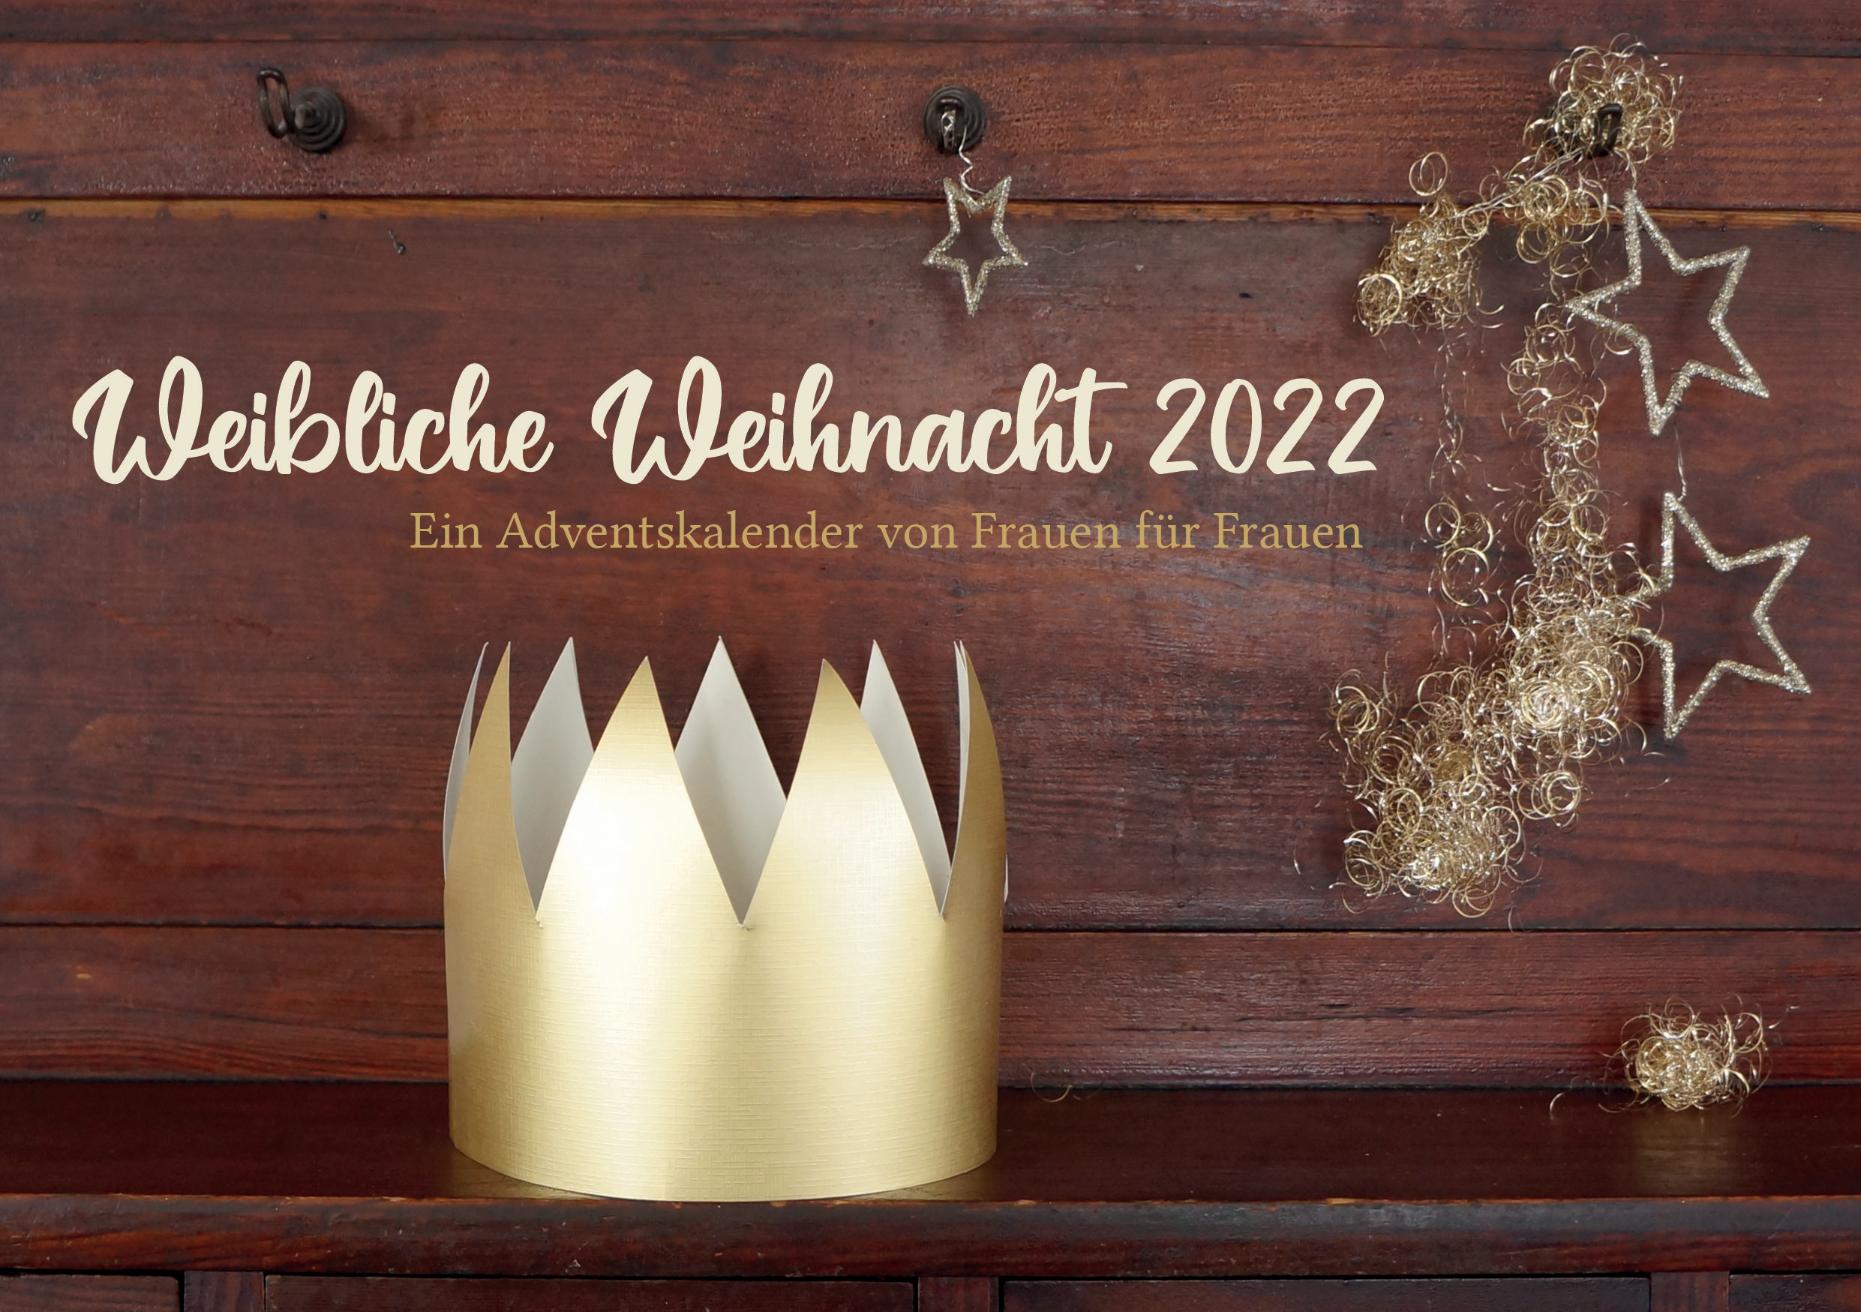 Weibliche Weihnacht 2022 (c) kfd Diözesanverband Mainz e.V.